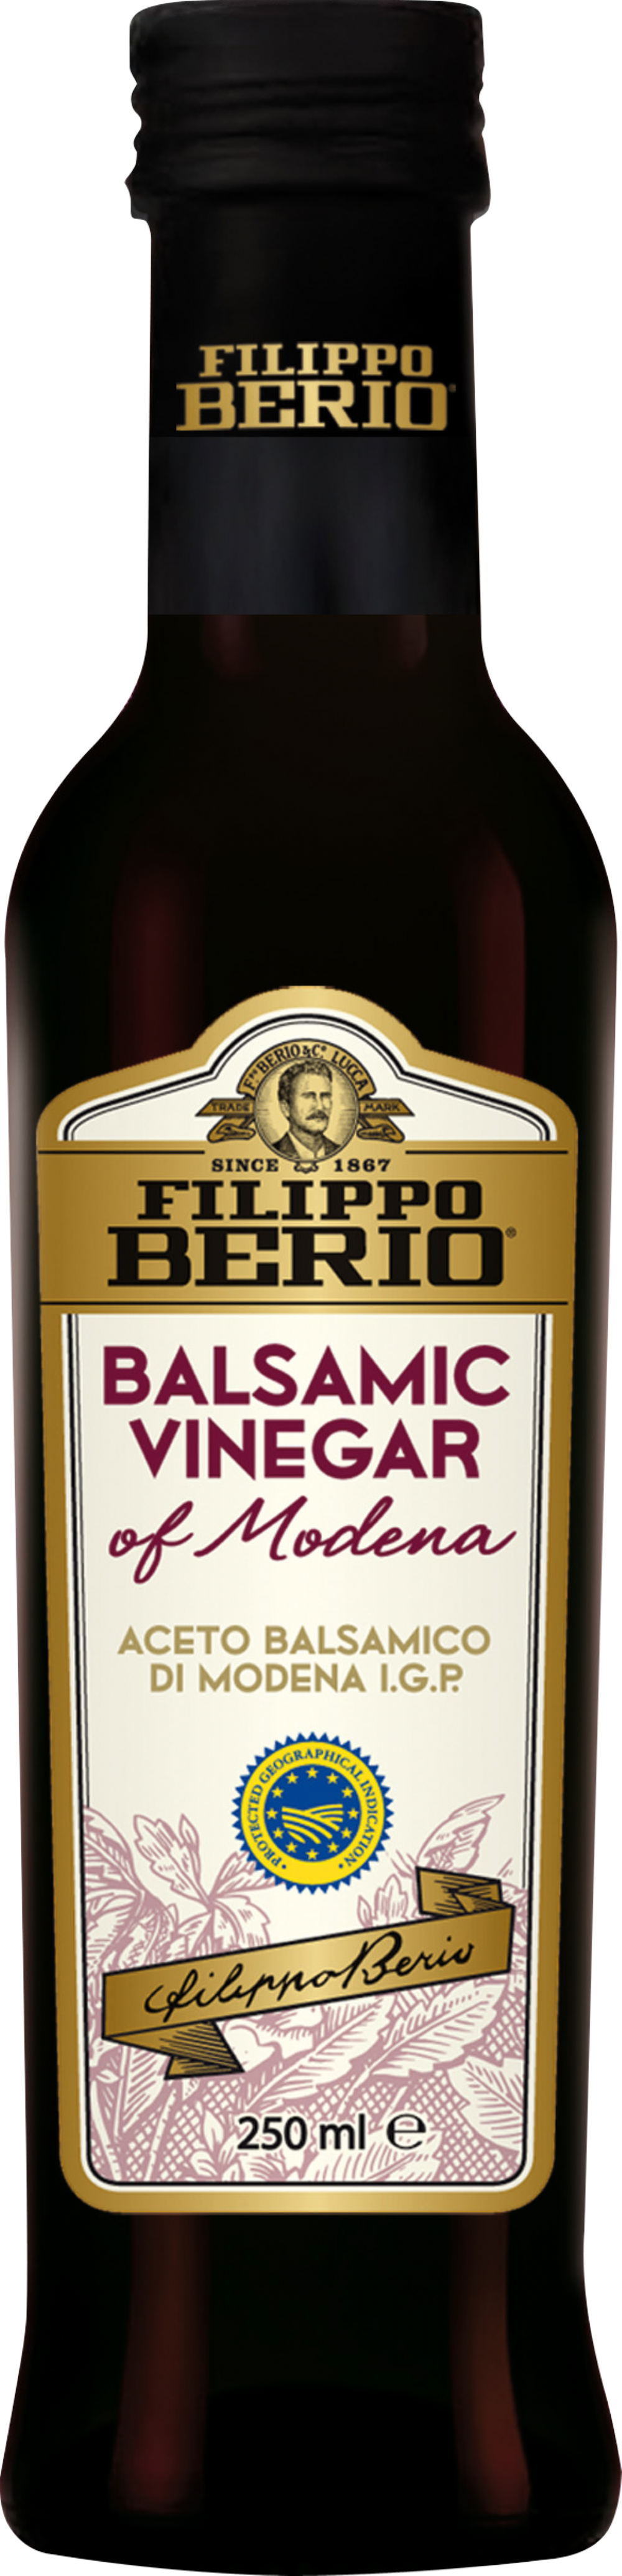 FILIPPO BERIO Balsamic Vinegar of Modena 250ml